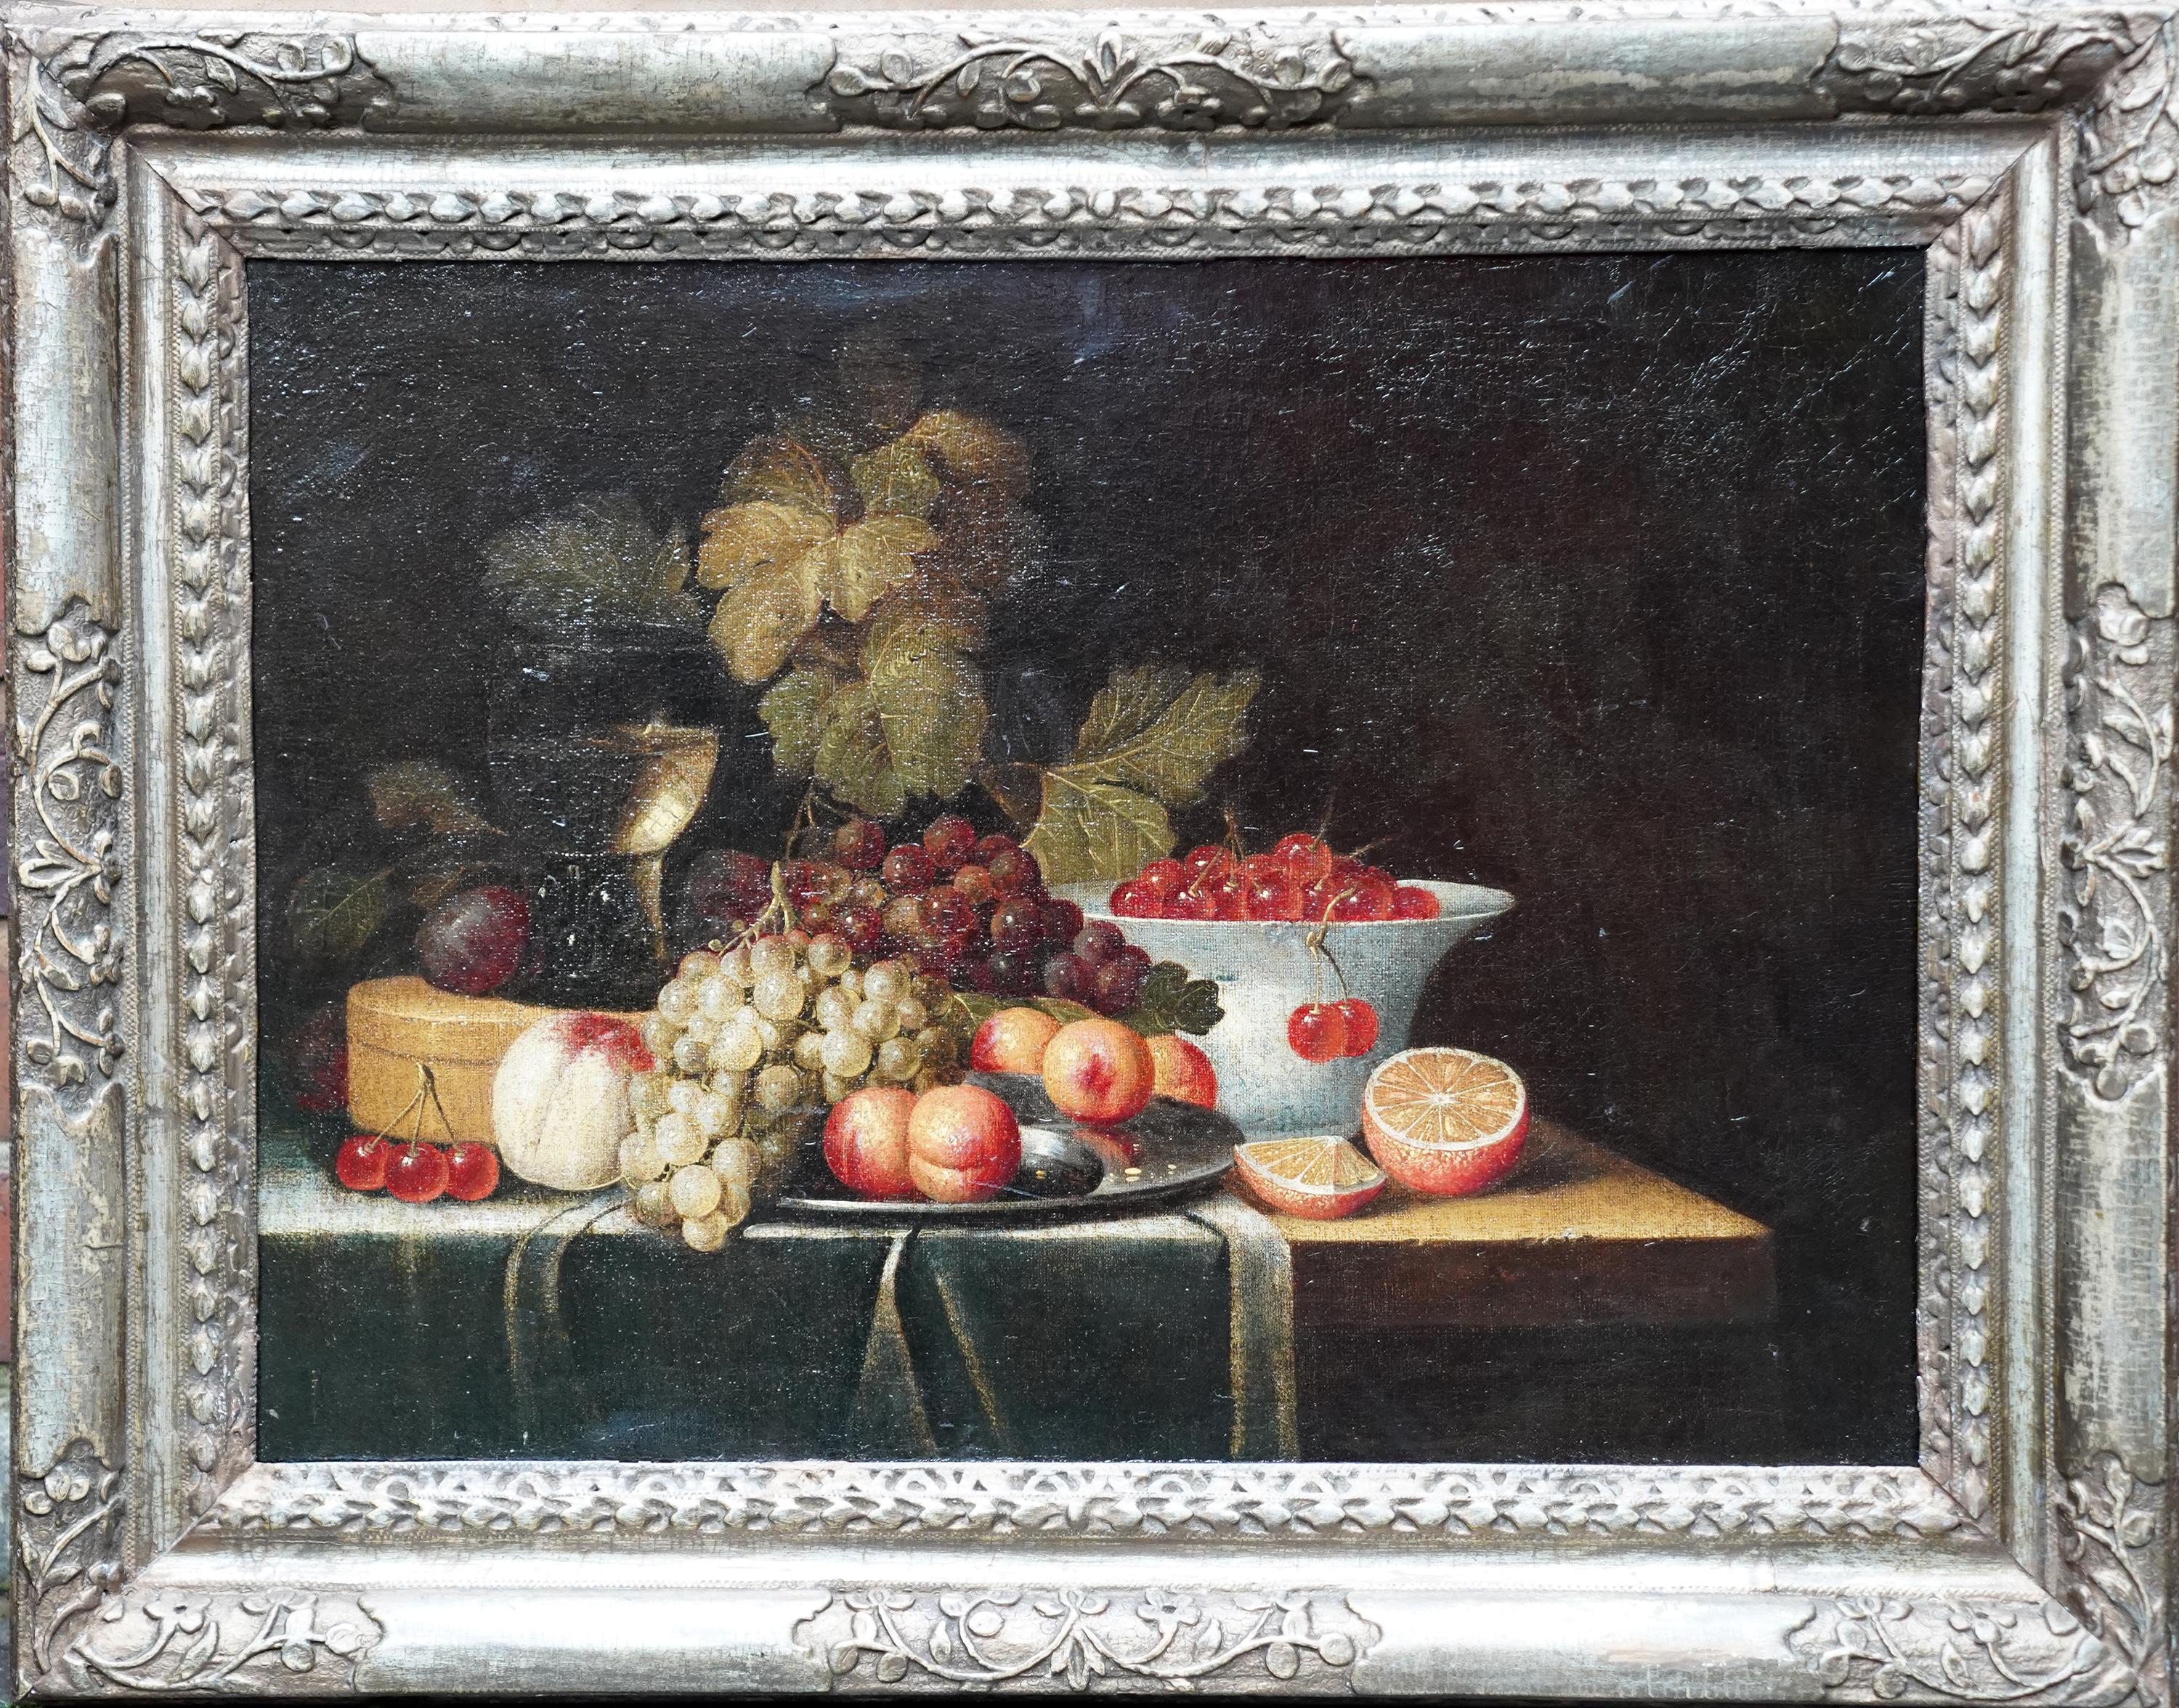 Jan Davidsz De Heem Still-Life Painting - Still Life of Fruit - Dutch 17th century art Old Master still life oil painting